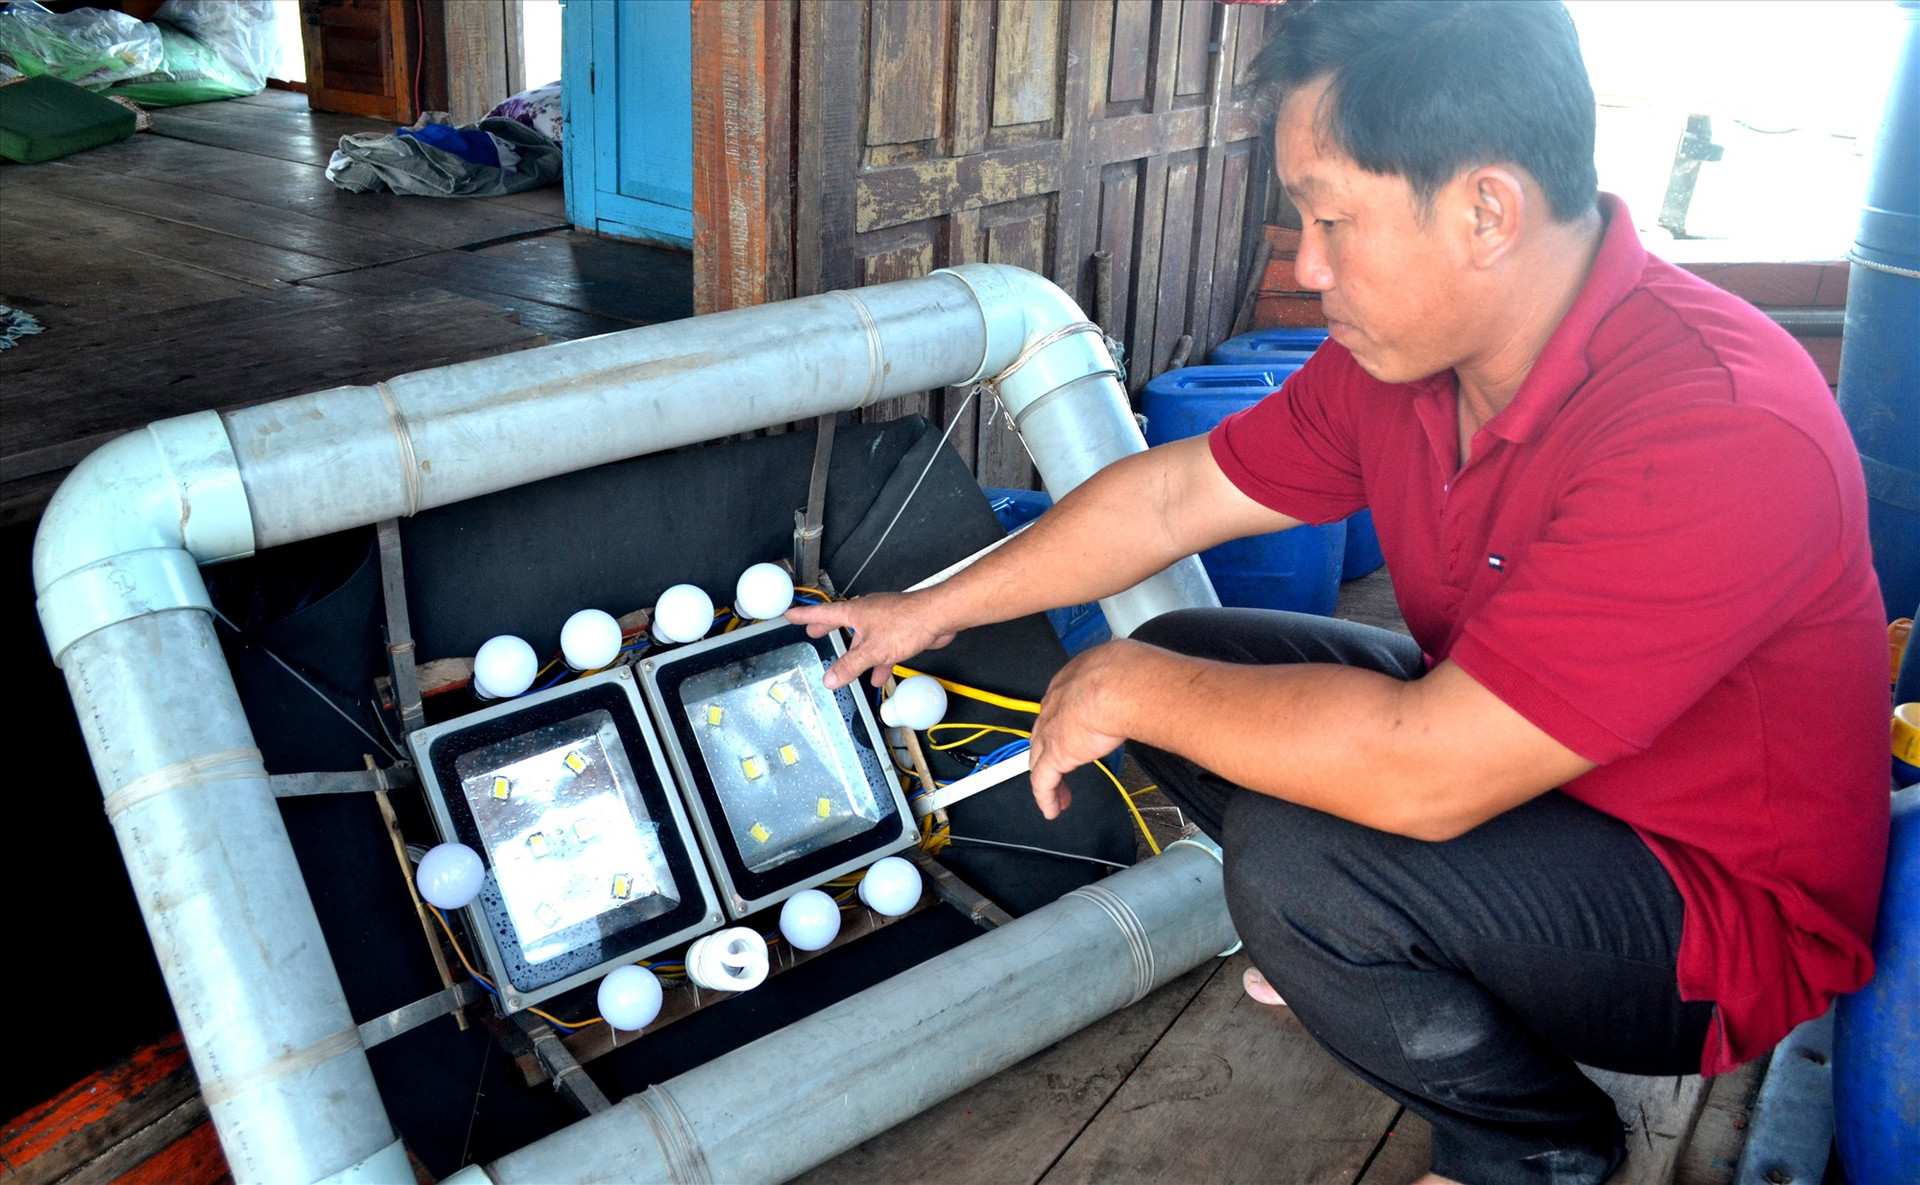 Ngư dân cần ứng dụng công nghệ mới để nâng cao hiệu quả khai thác hải sản. Ảnh: Q.Việt